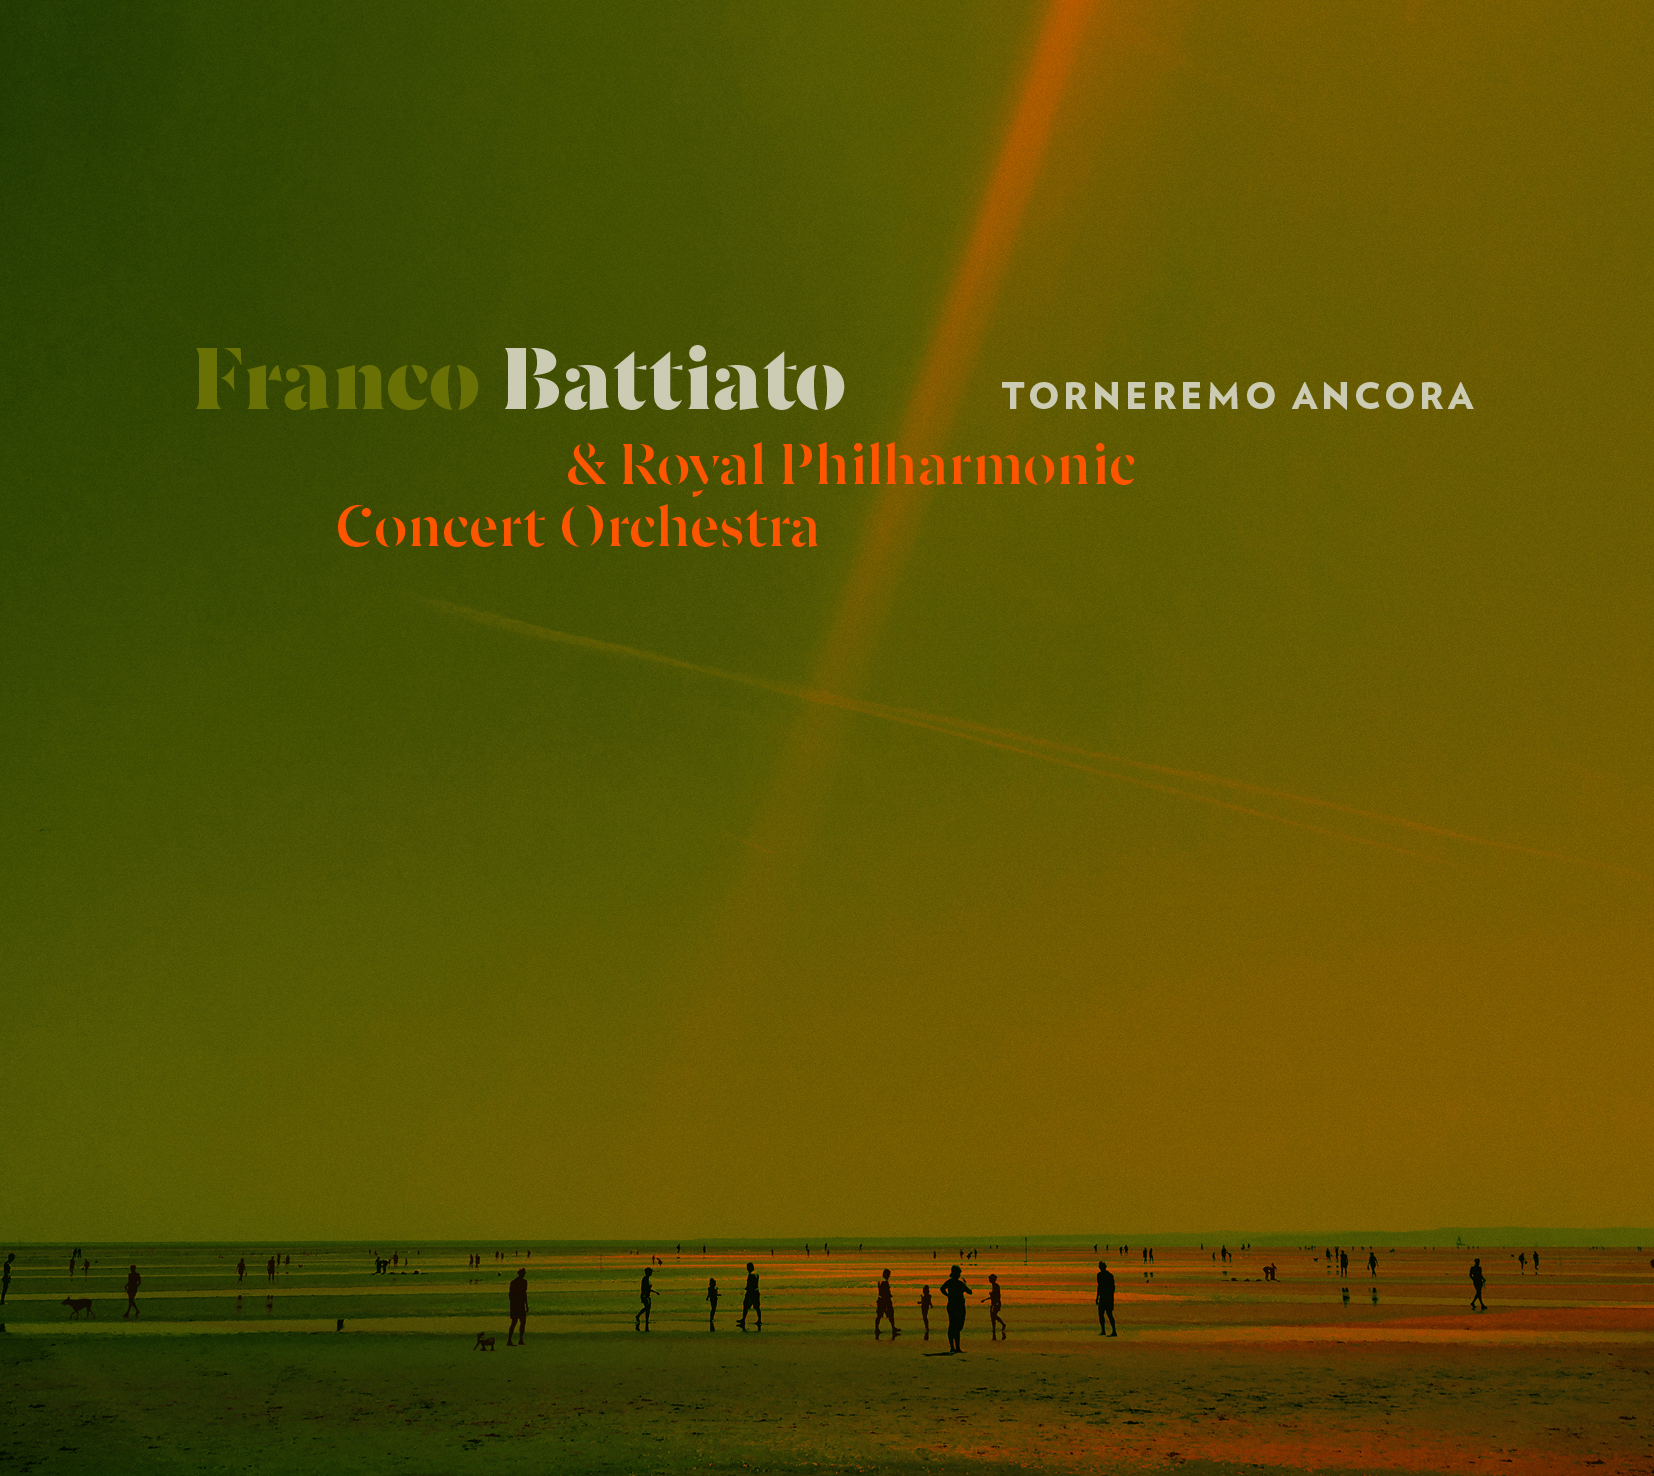 Musica Italiana, Recensioni. “Torneremo ancora”, il de profundis di Franco Battiato